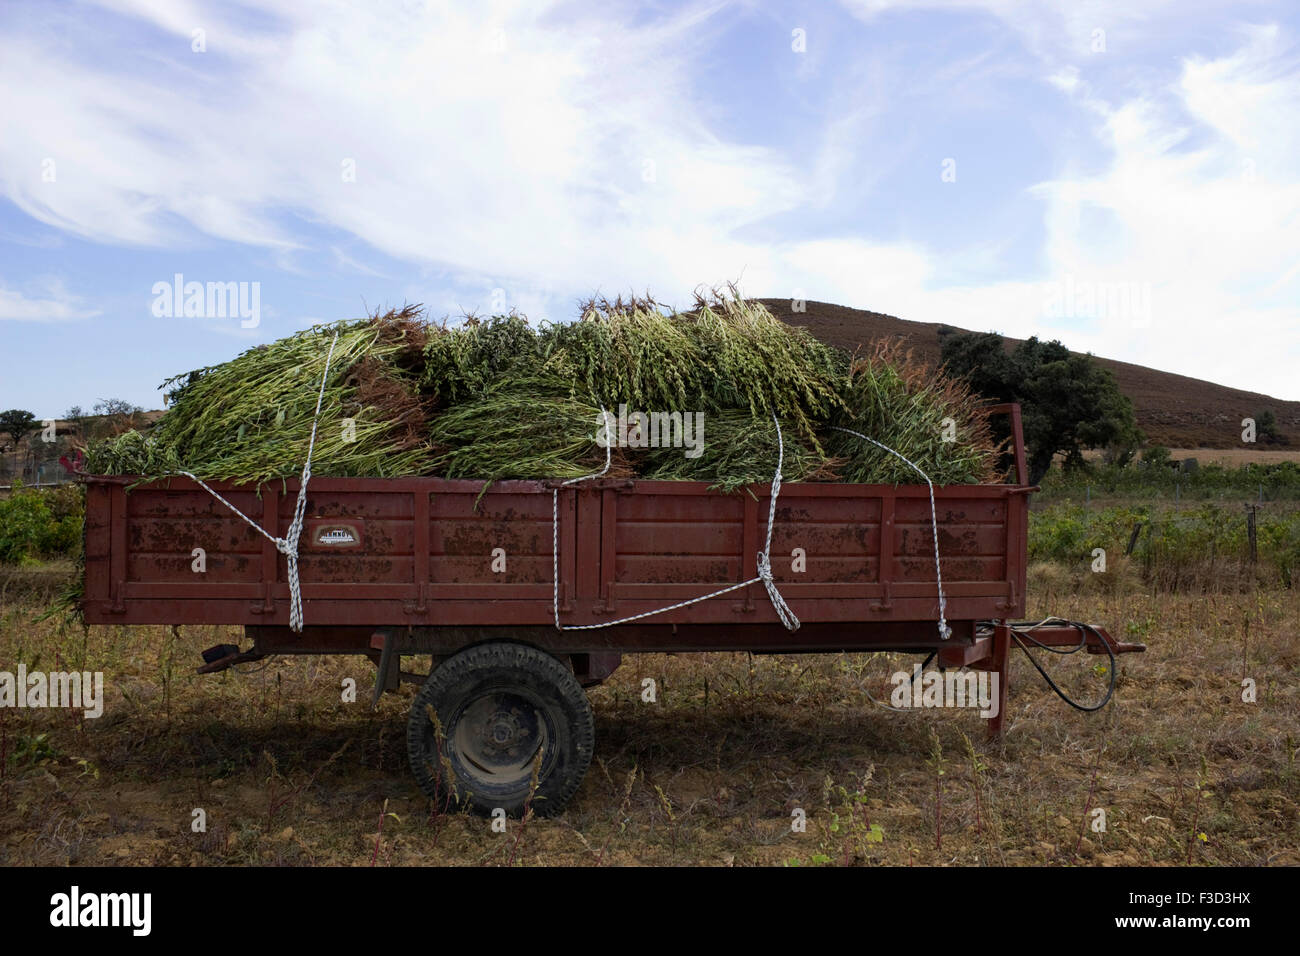 La récolte des gousses fraîches sésame plantes chargé sur un coach-travail contre le ciel bleu. Limnos ou île de Lemnos, Grèce Banque D'Images